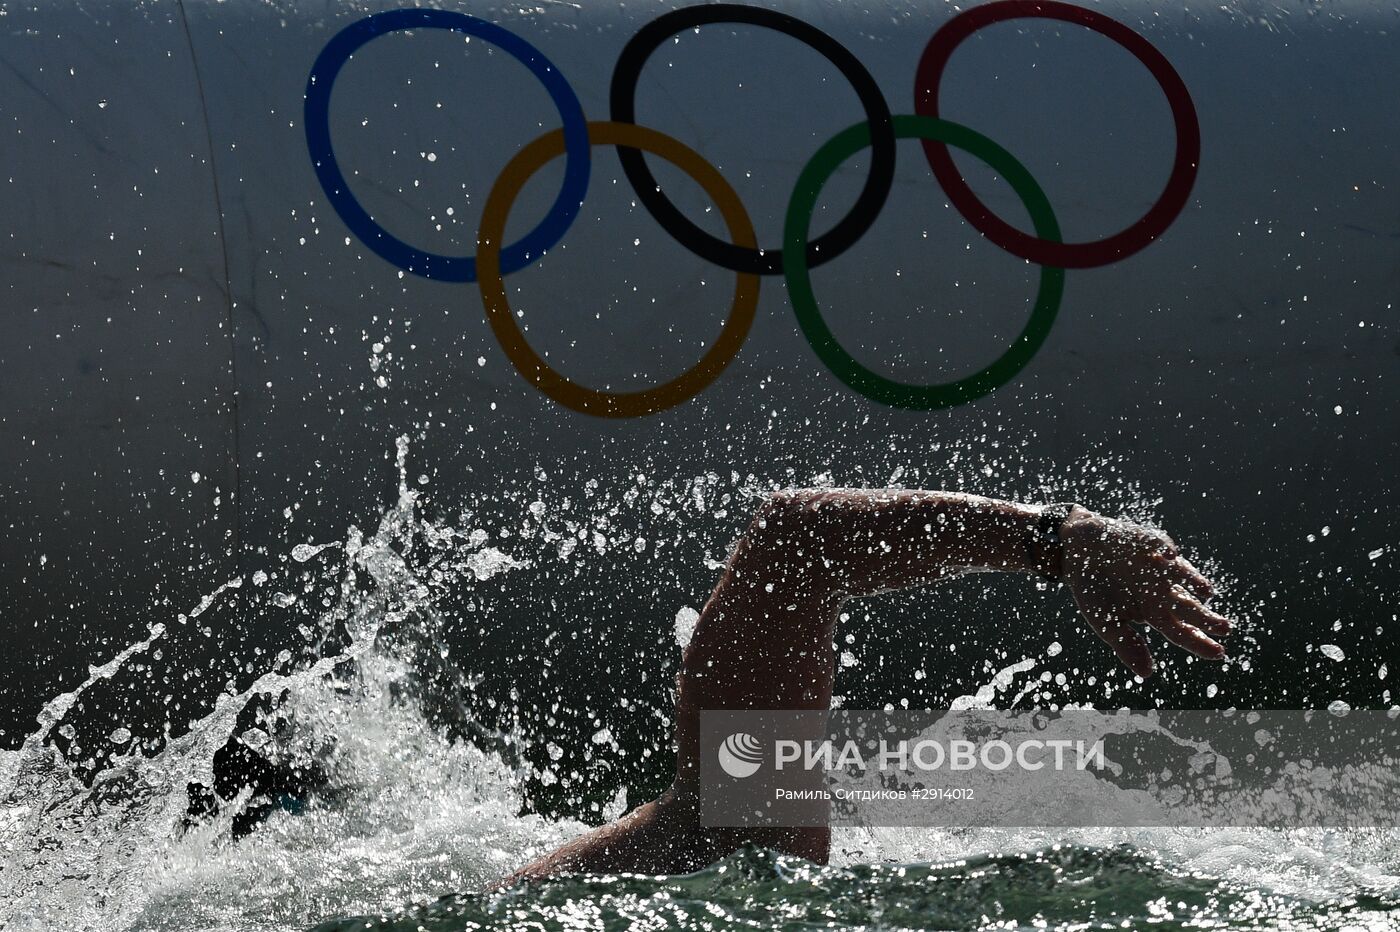 Олимпиада 2016. Плавание. Открытая вода. Мужчины